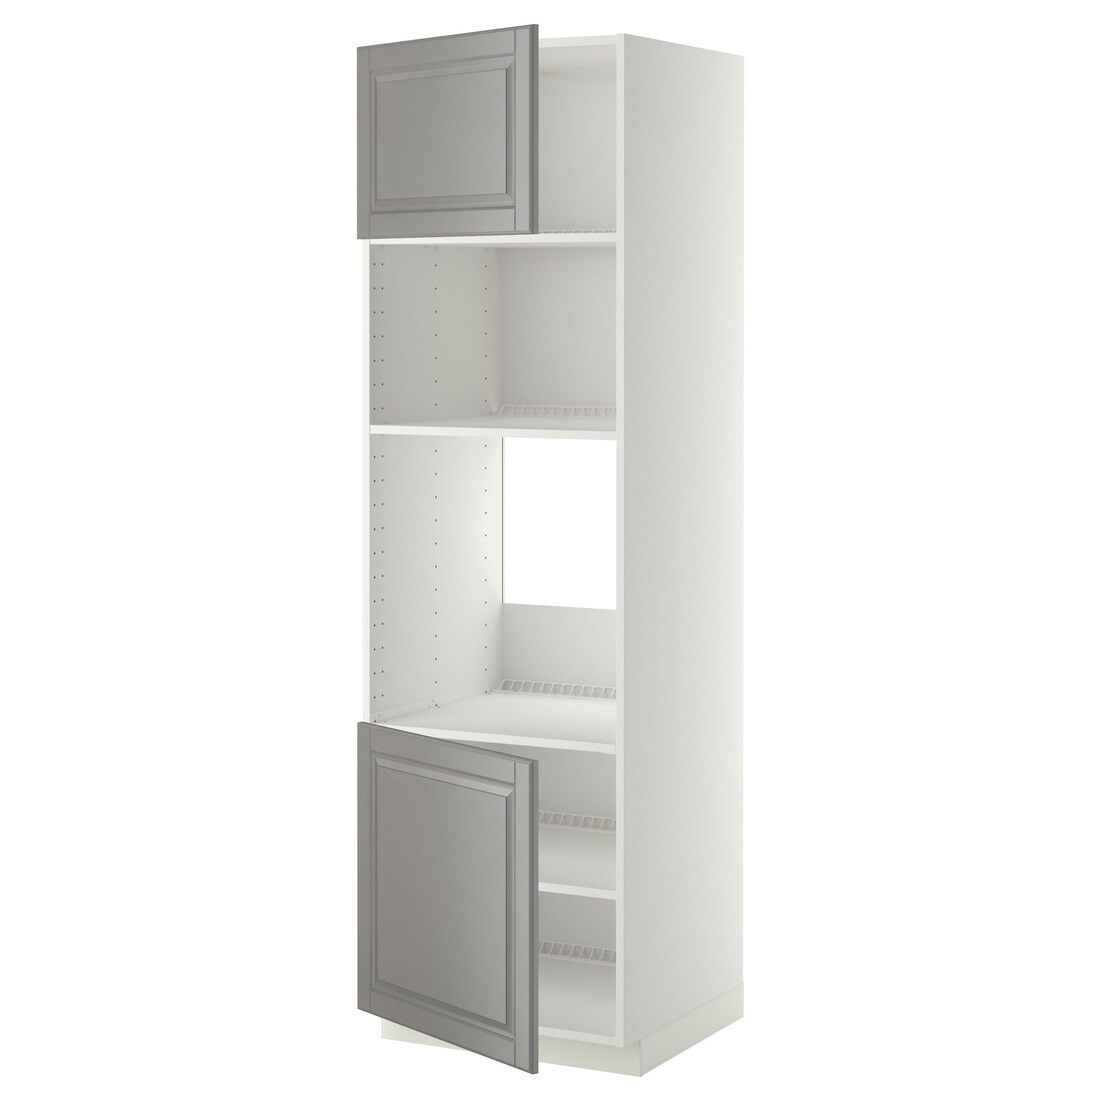 IKEA METOD МЕТОД Висока шафа для духовки / НВЧ, білий / Bodbyn сірий, 60x60x200 см 69454545 694.545.45